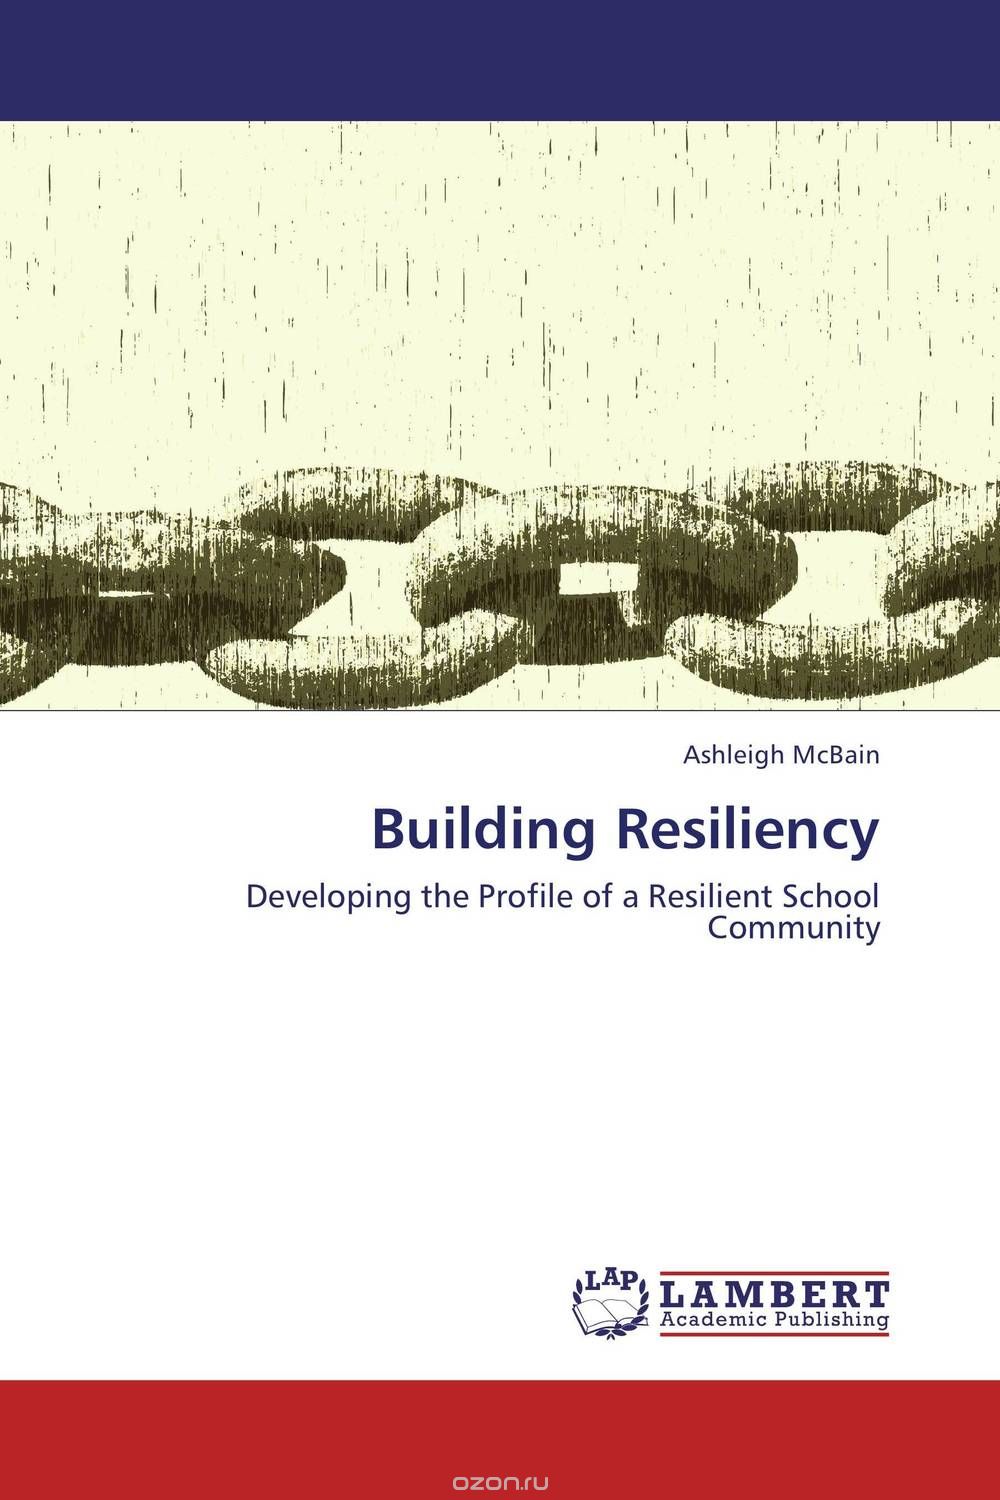 Скачать книгу "Building Resiliency"